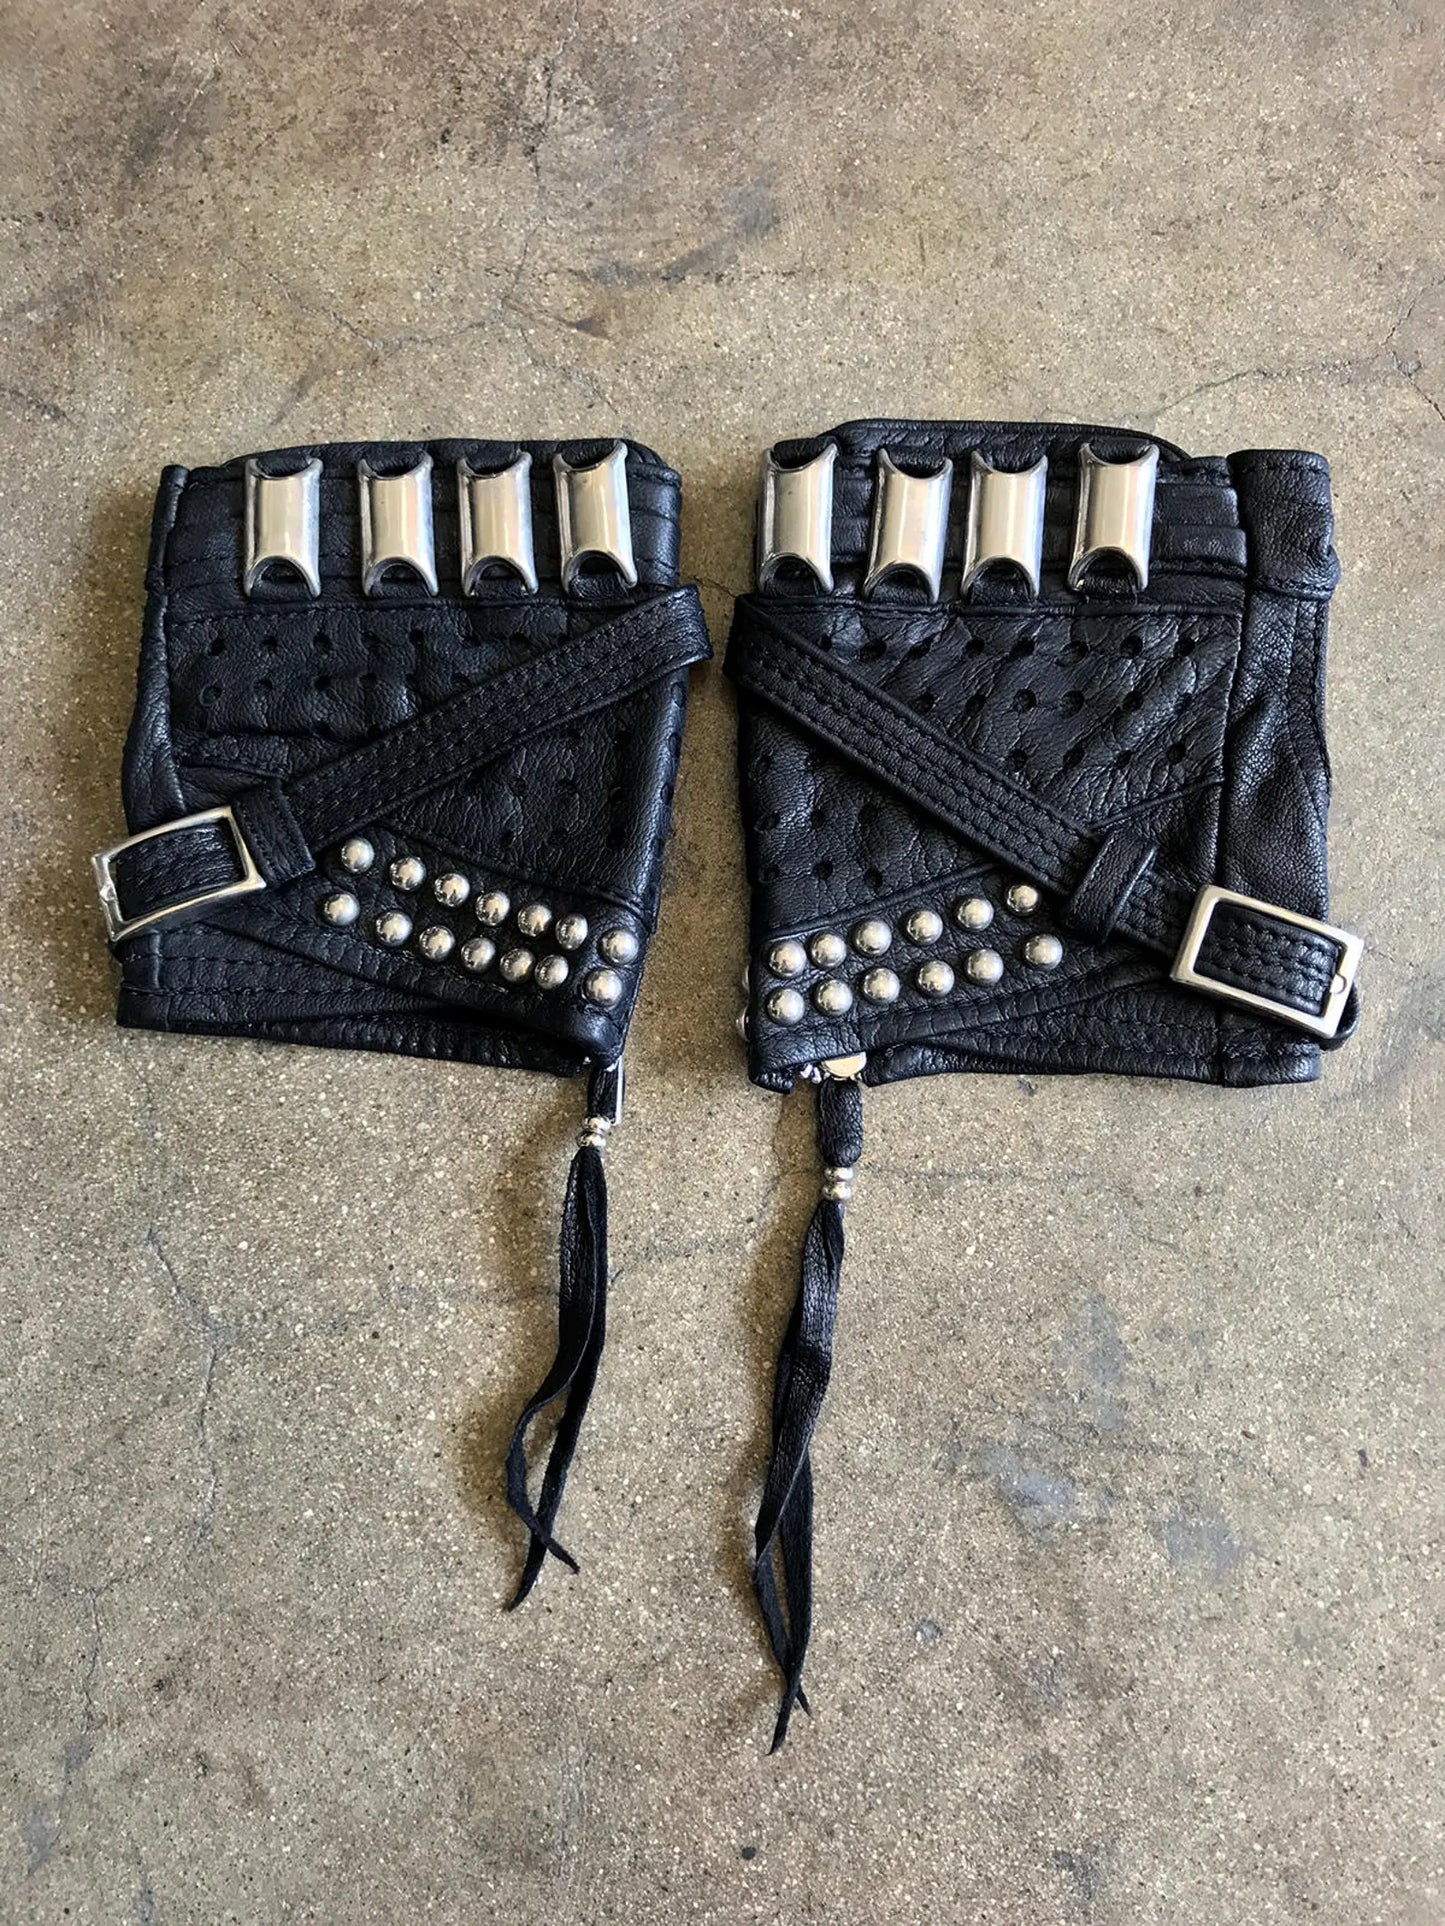 Duster Black Gloves